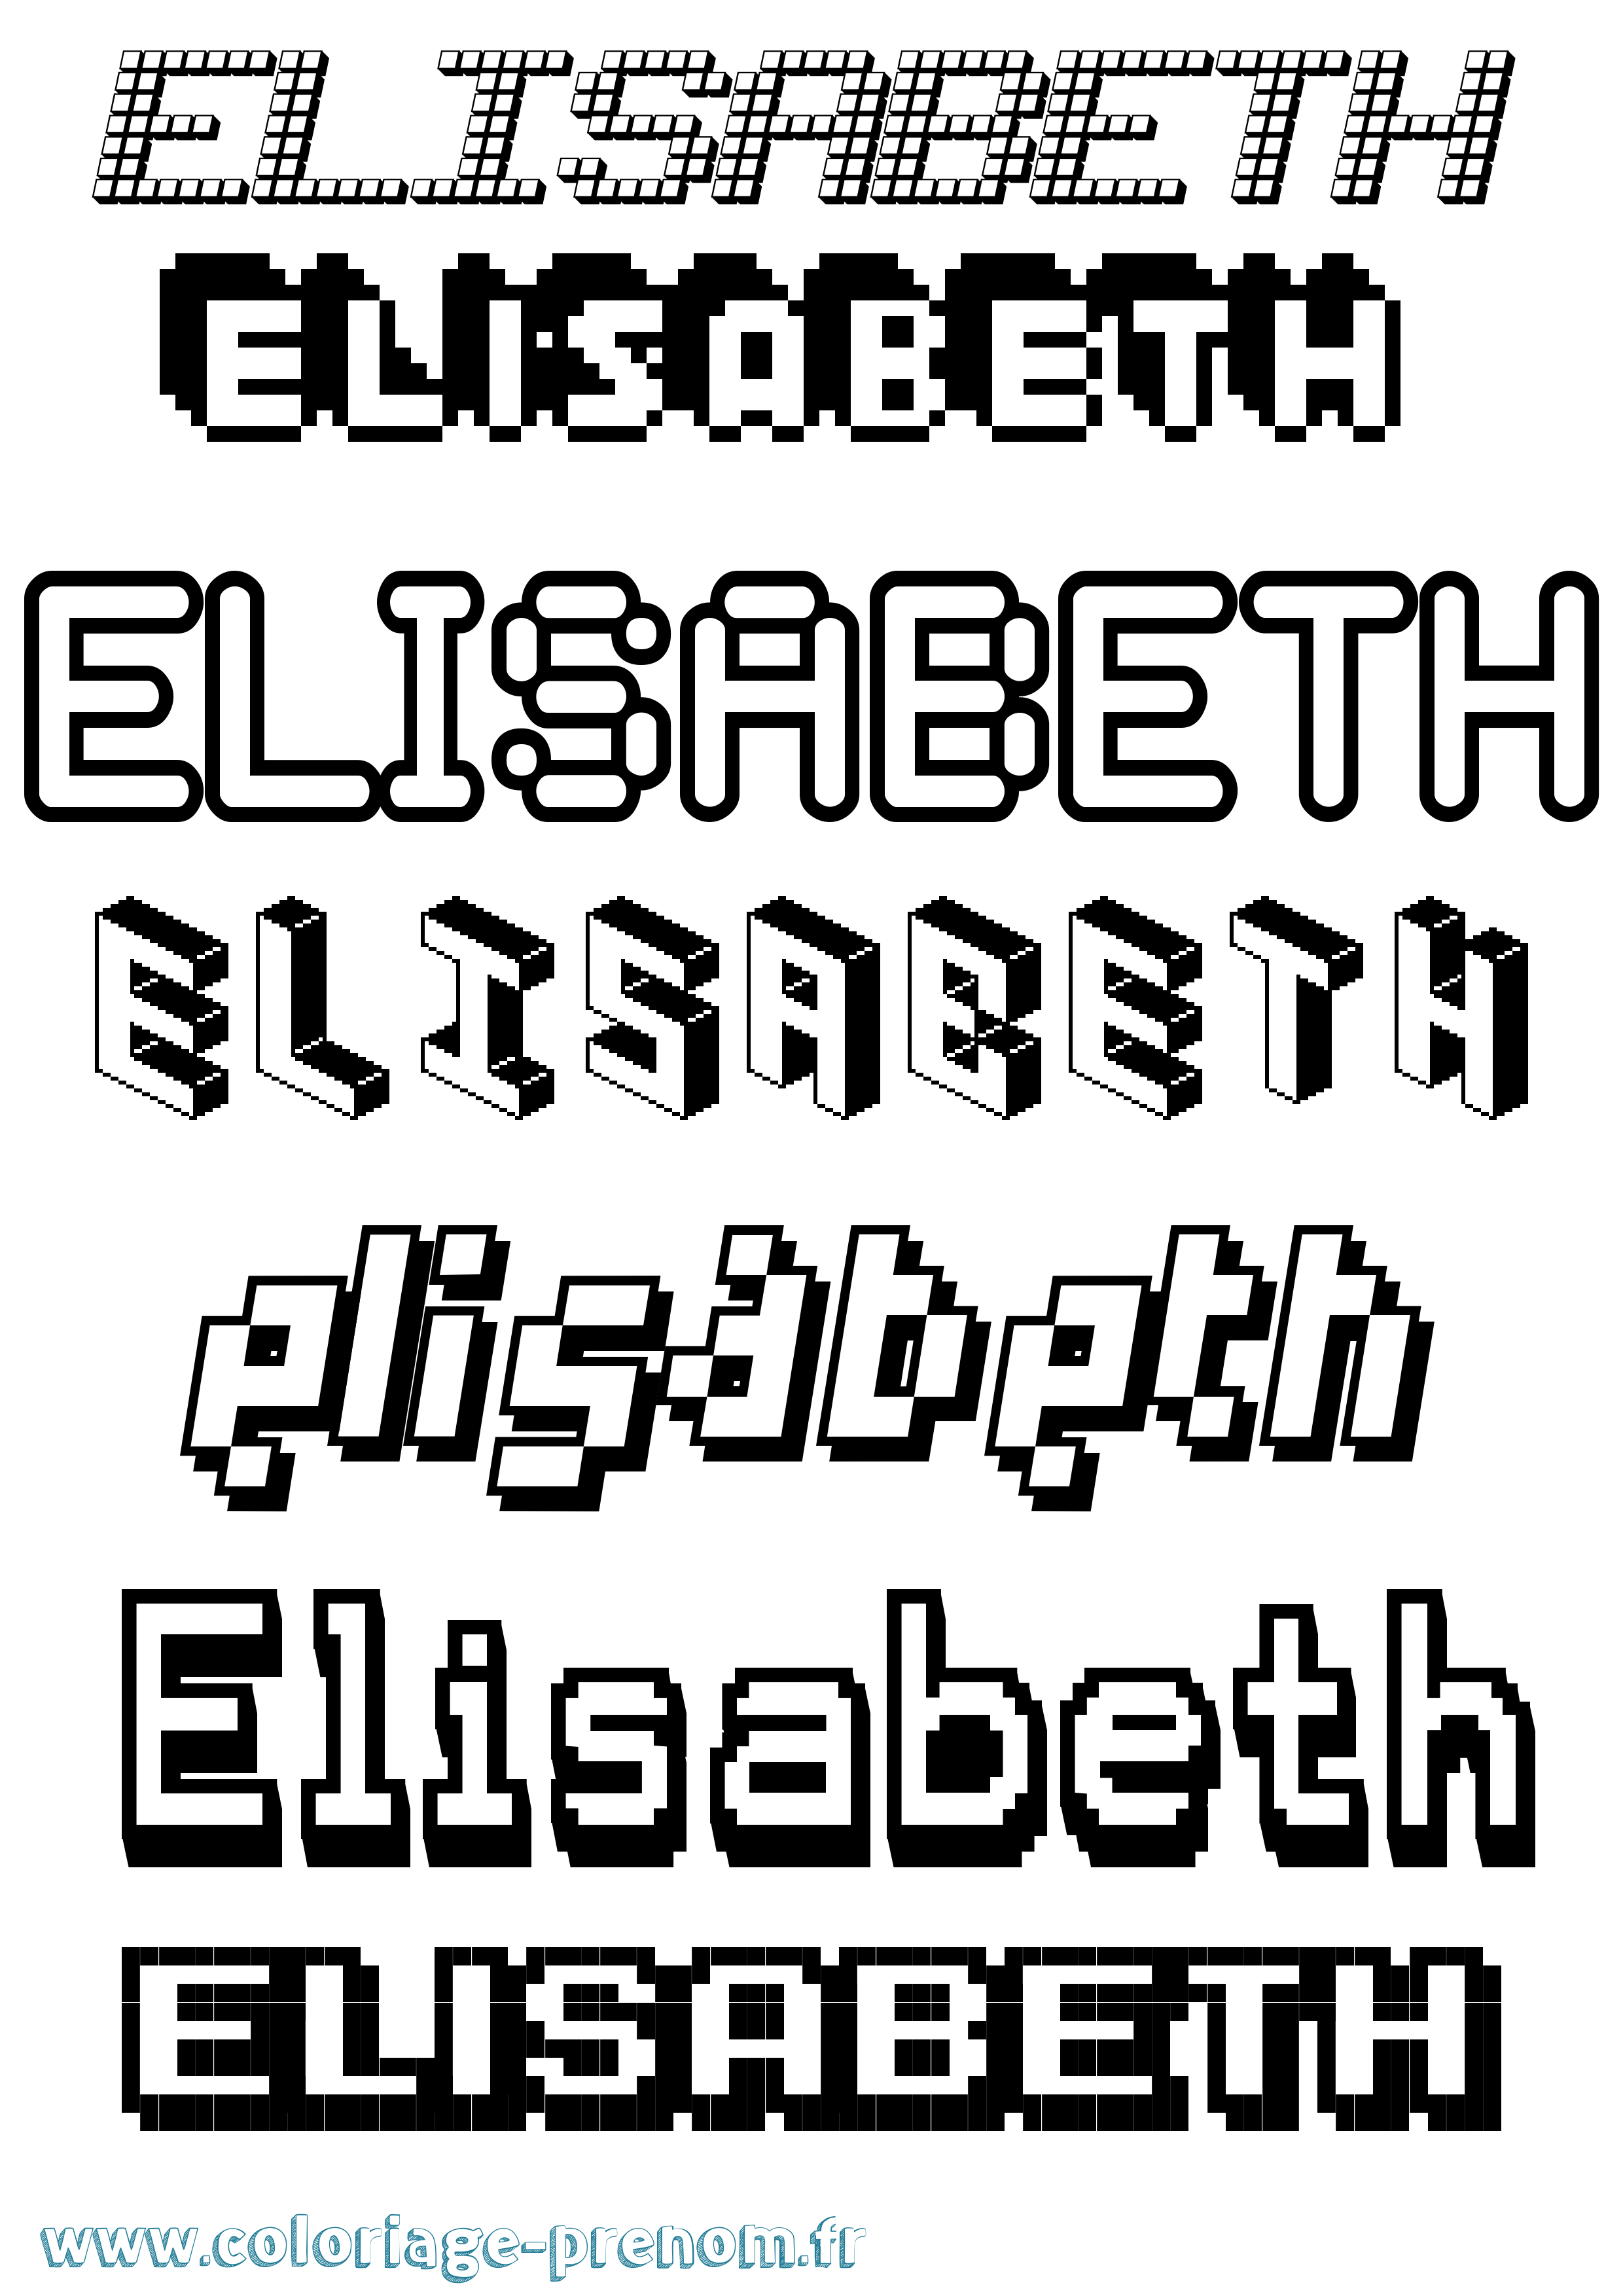 Coloriage prénom Elisabeth